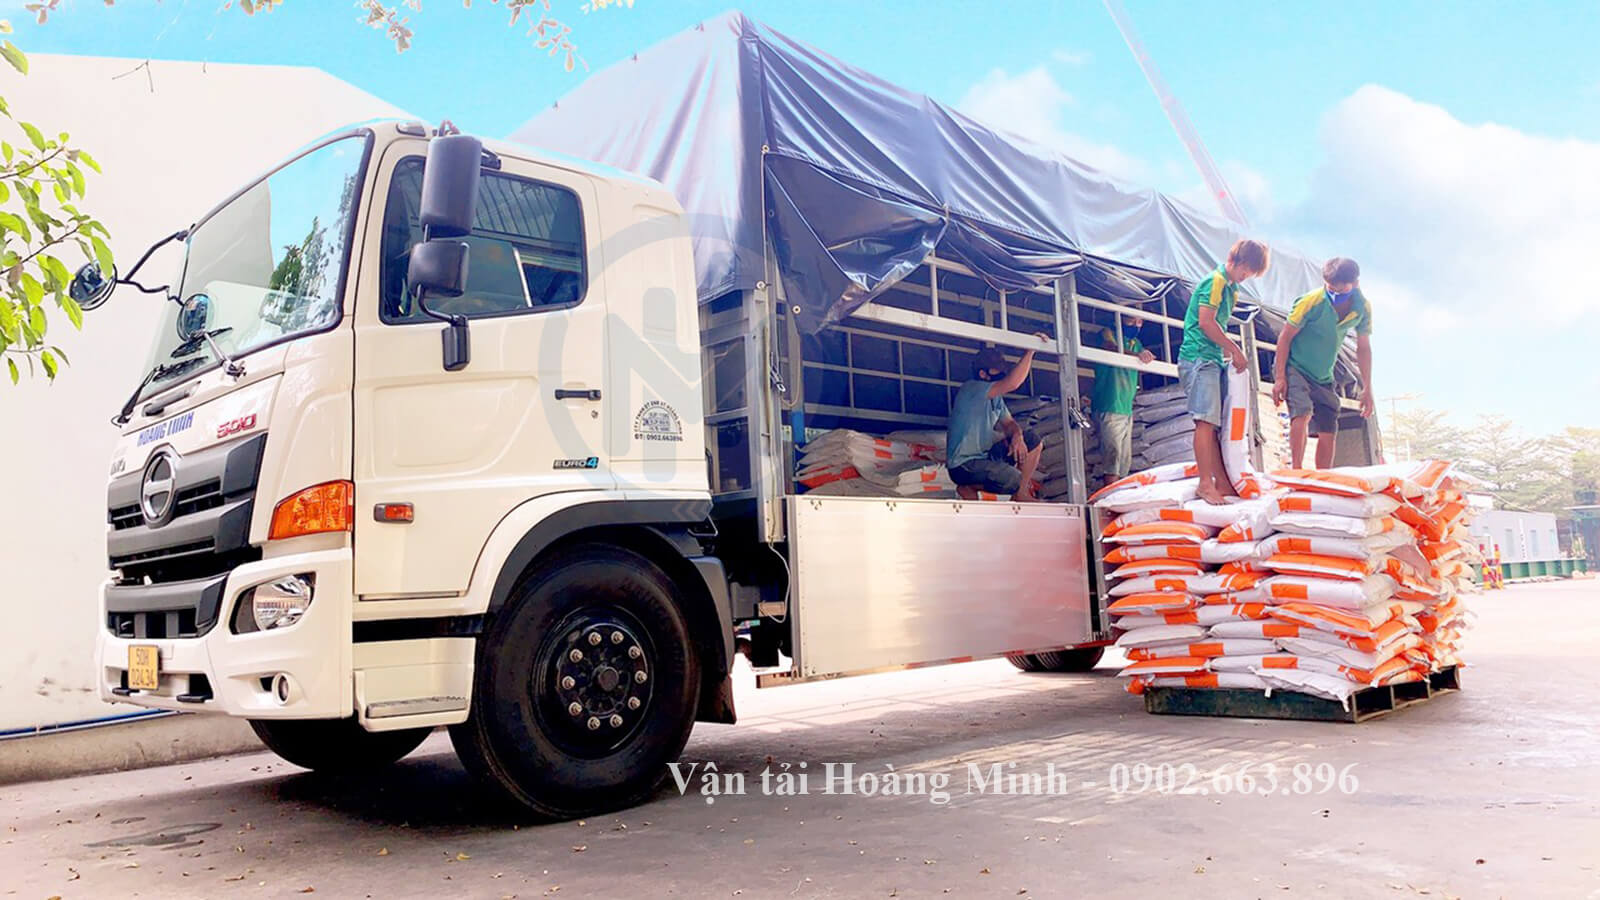 Vận tải Hoàng Minh cho thuê xe tải chở hàng huyện Long Thành